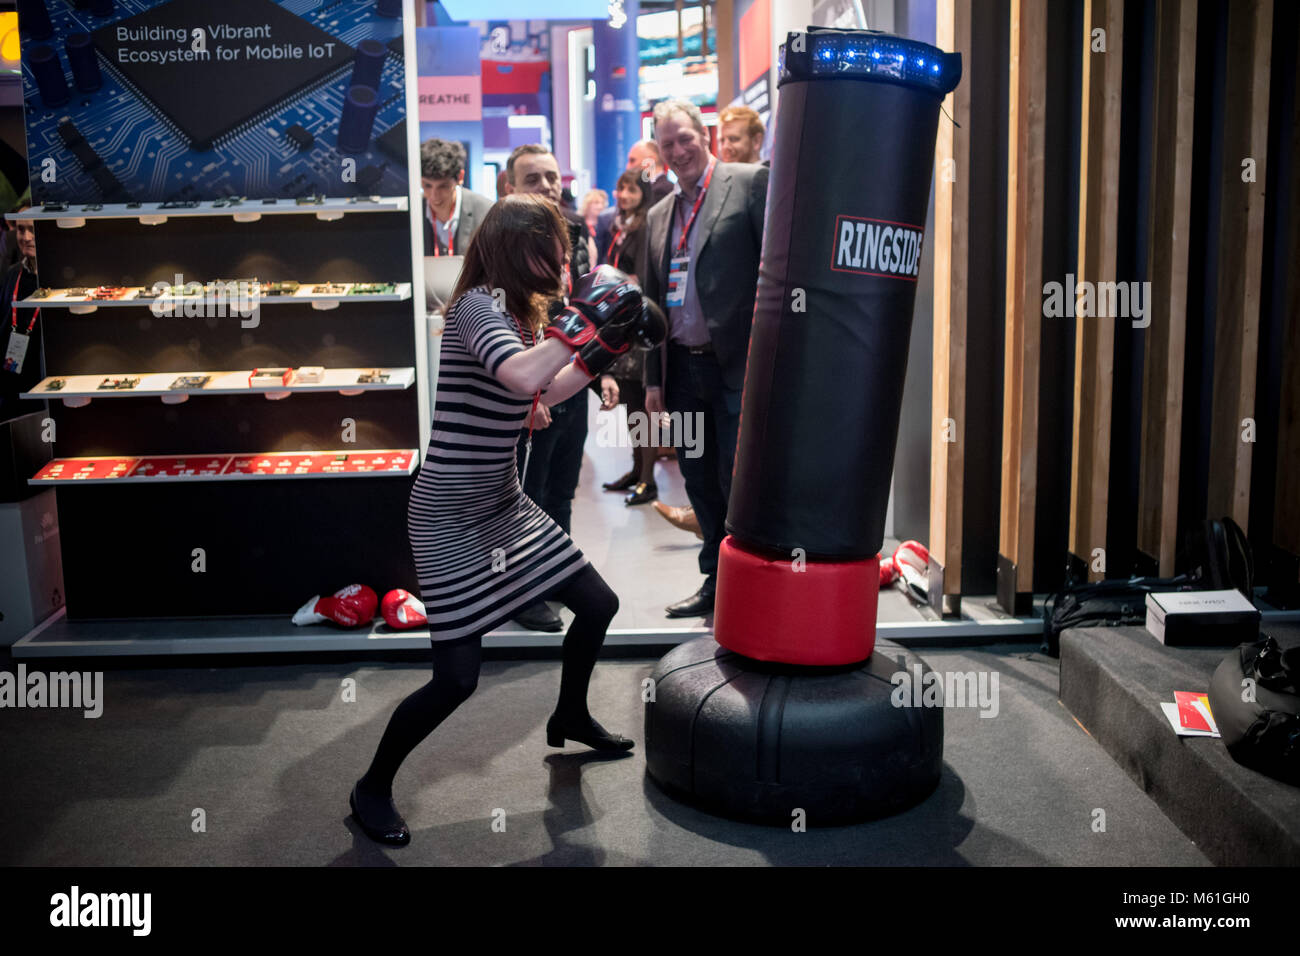 Una donna colpisce un sacco da boxe dotata di sensori durante il secondo  giorno dell'annuale Mobile World Congress, il mondo è più grande fiera del  mobile in cui brin Foto stock -